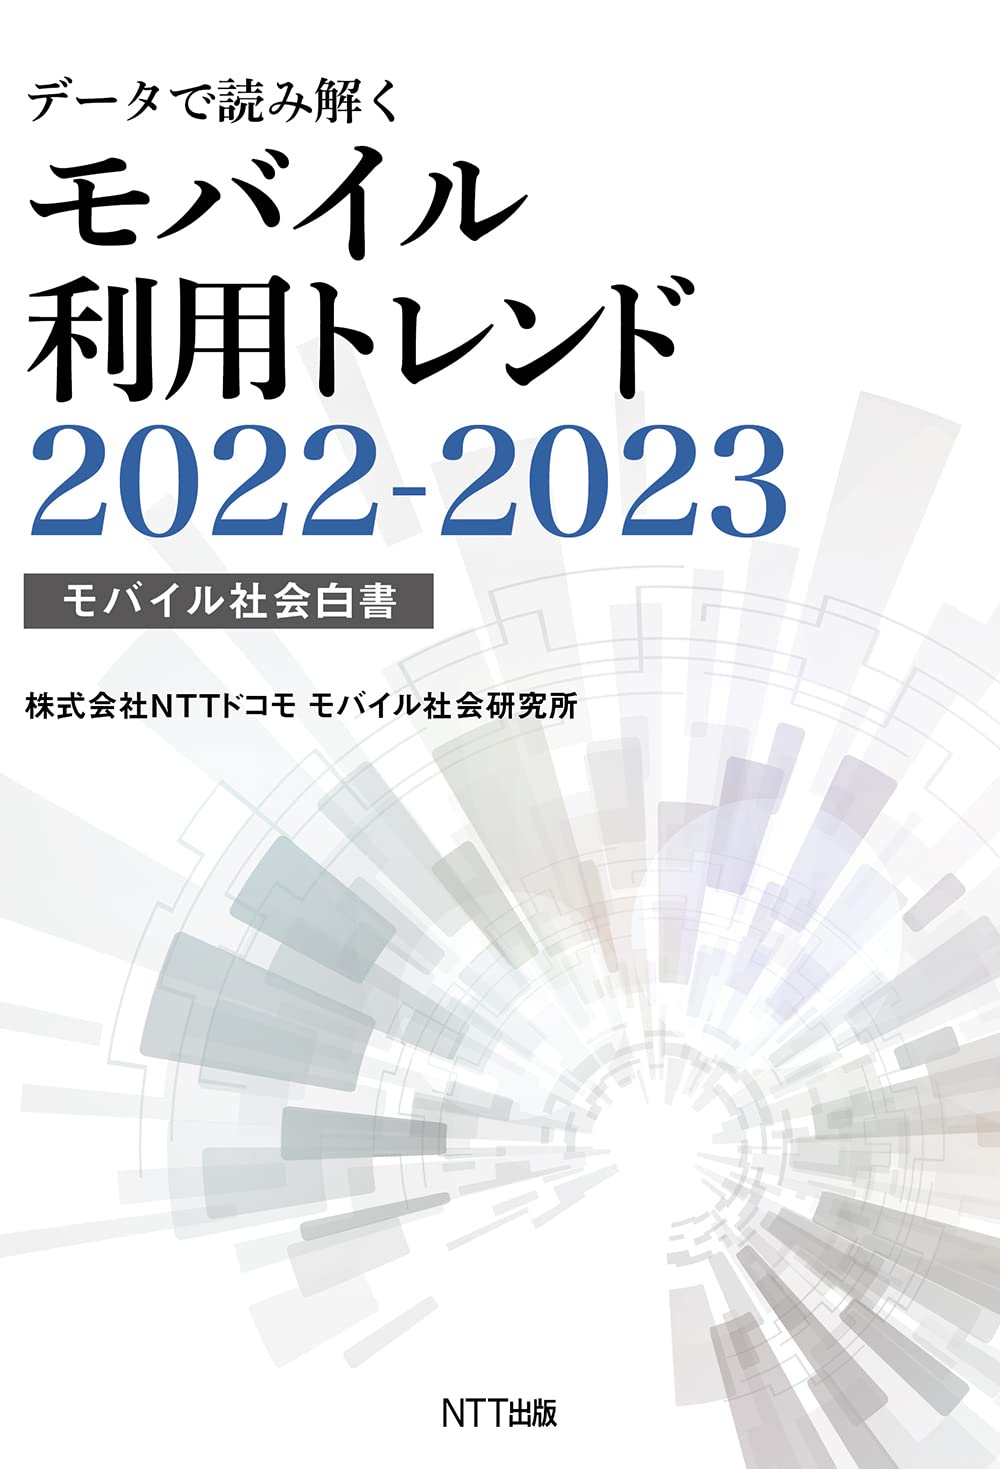 デ-タで讀み解くモバイル利用トレンド (2022)